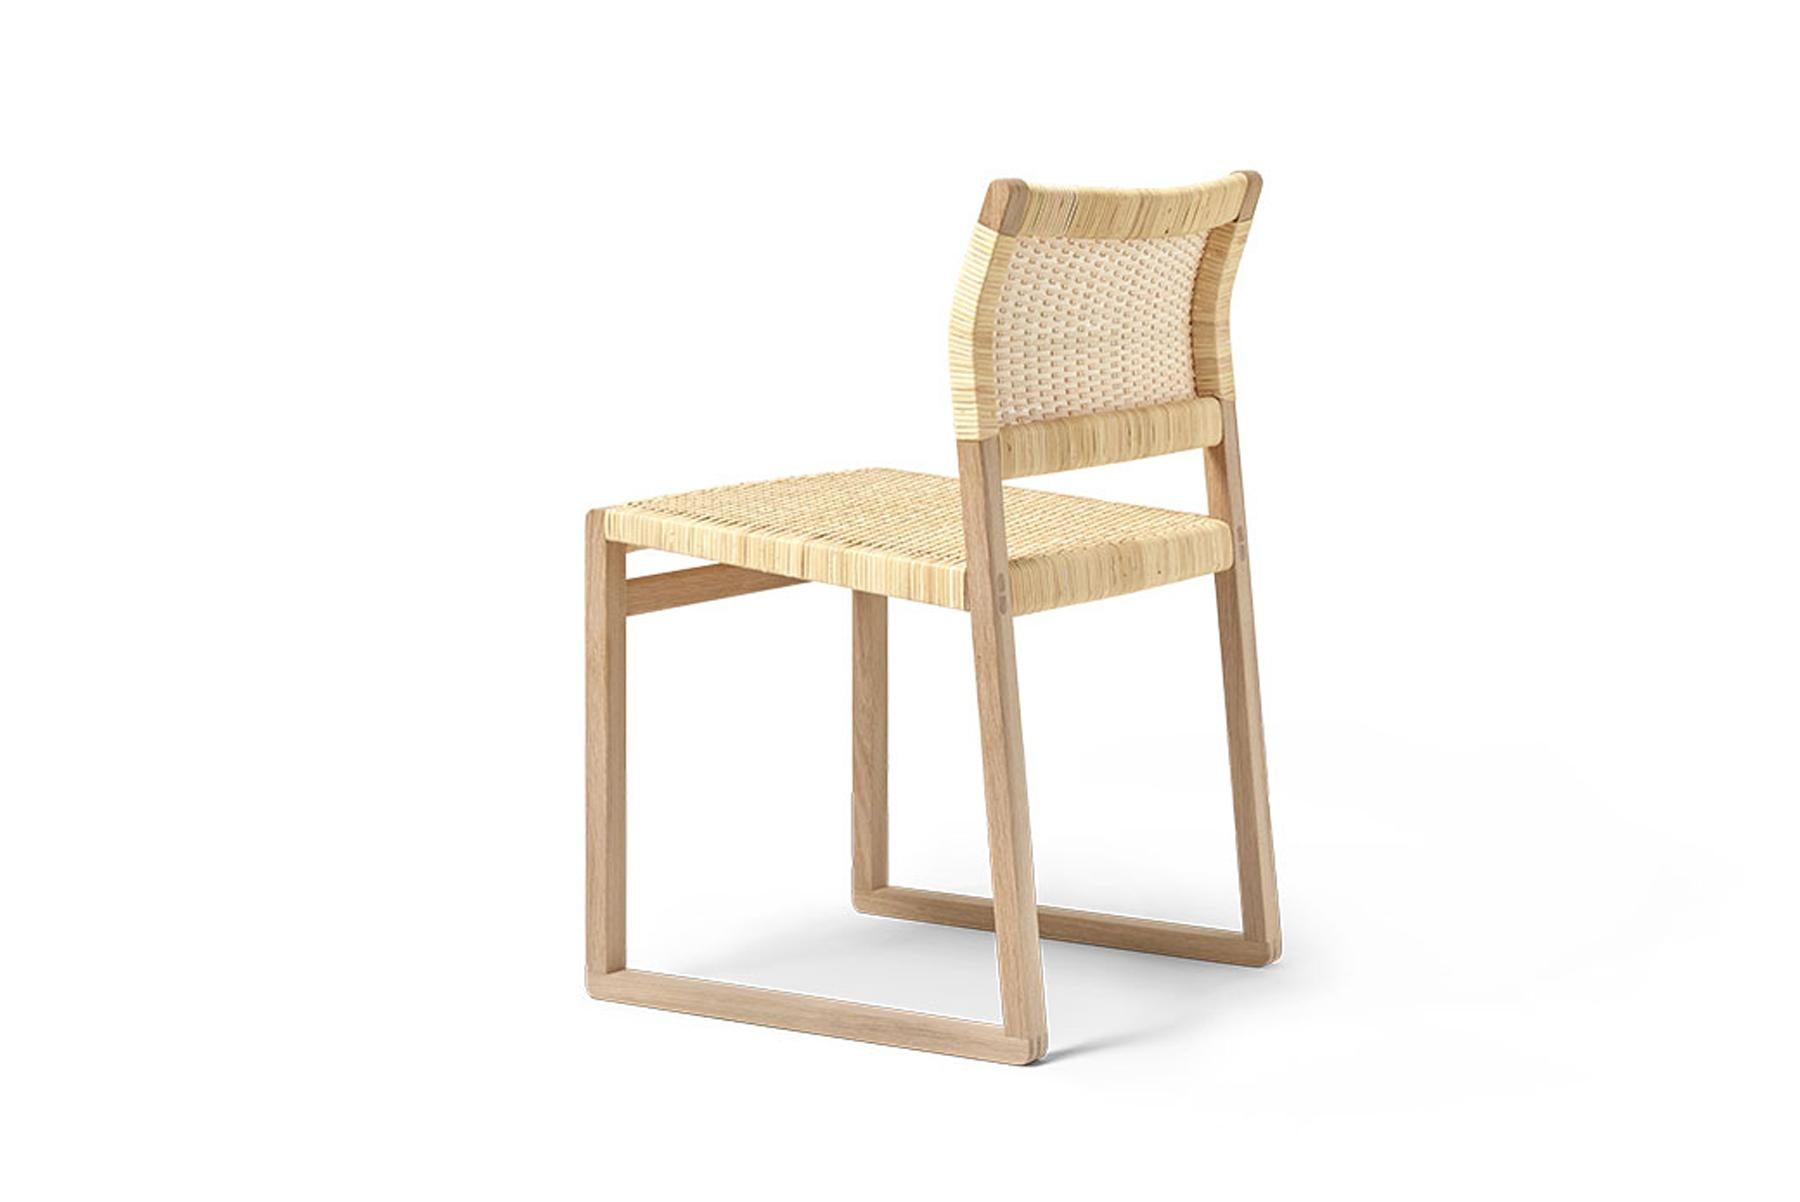 Der BM61 Chair und der BM62 Armchair sind schlank und doch solide, einfach und doch auffallend. Sie bringen uns zurück zur Natur - eine willkommene Rückkehr zu einfachen Formen, die die Essenz eines Konzepts einfangen. Freiliegende Konstruktion. Und